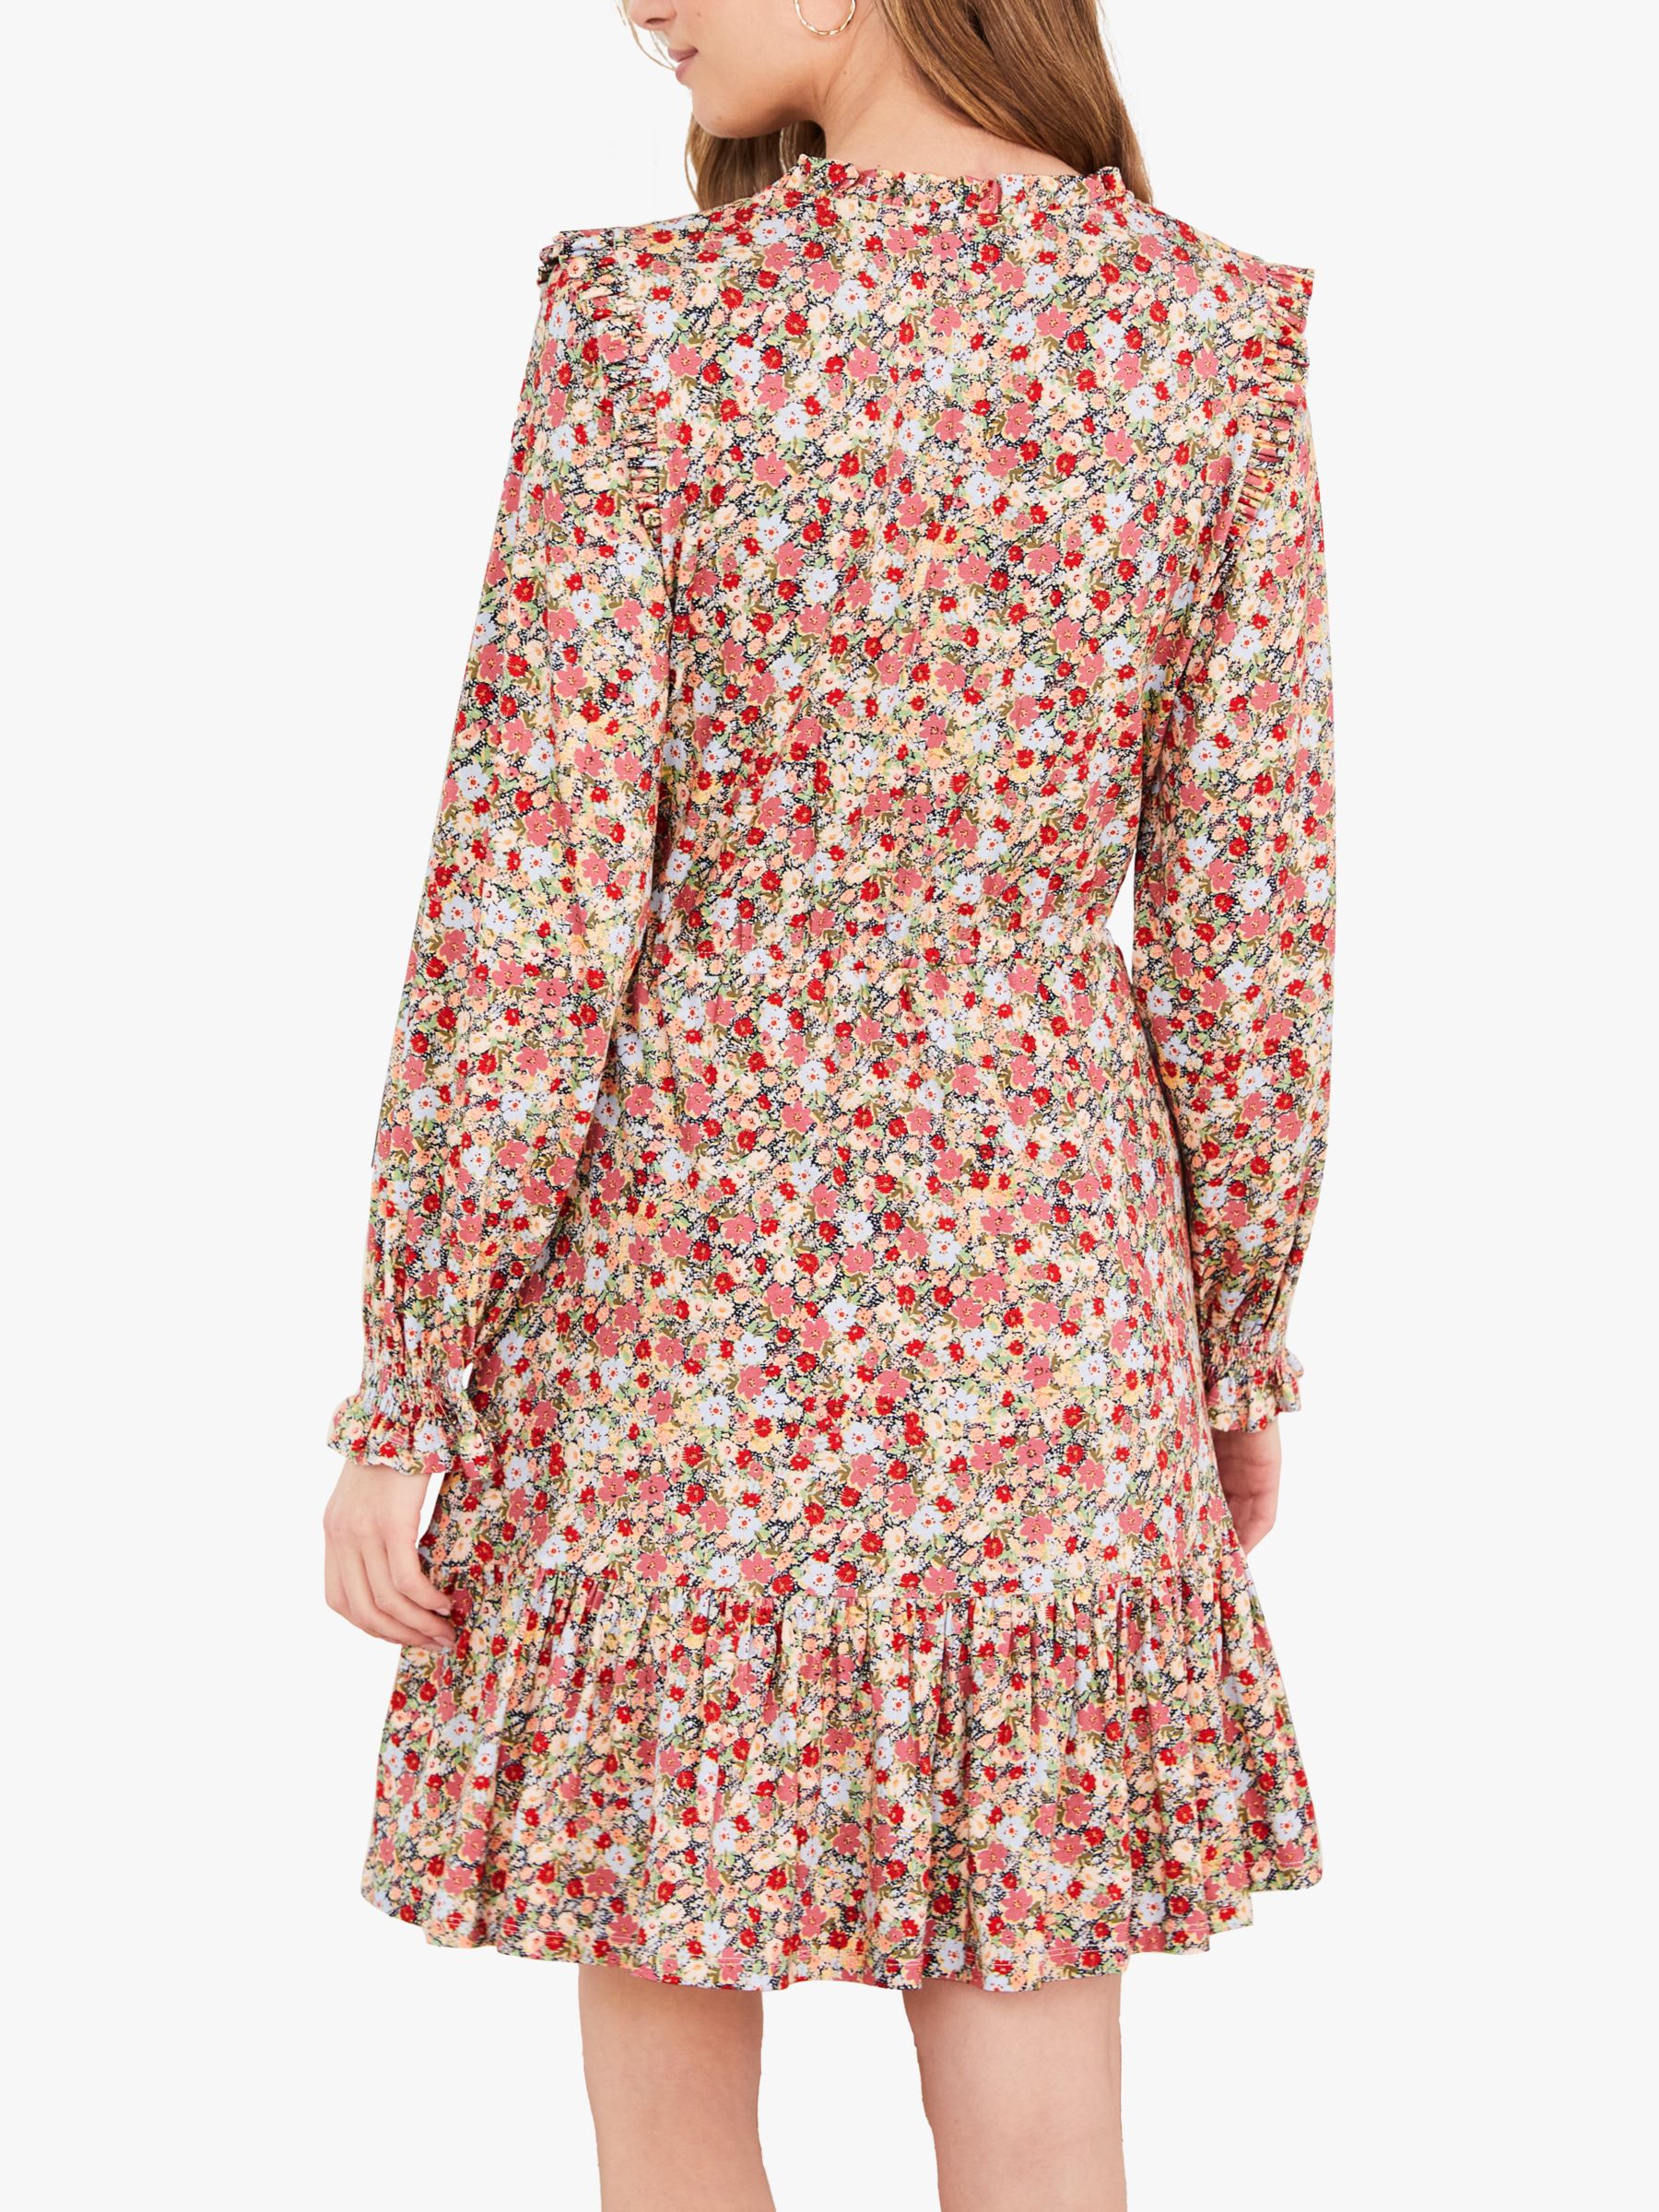 Baukjen Noa Wildflower Print Mini Dress, Pink, 12